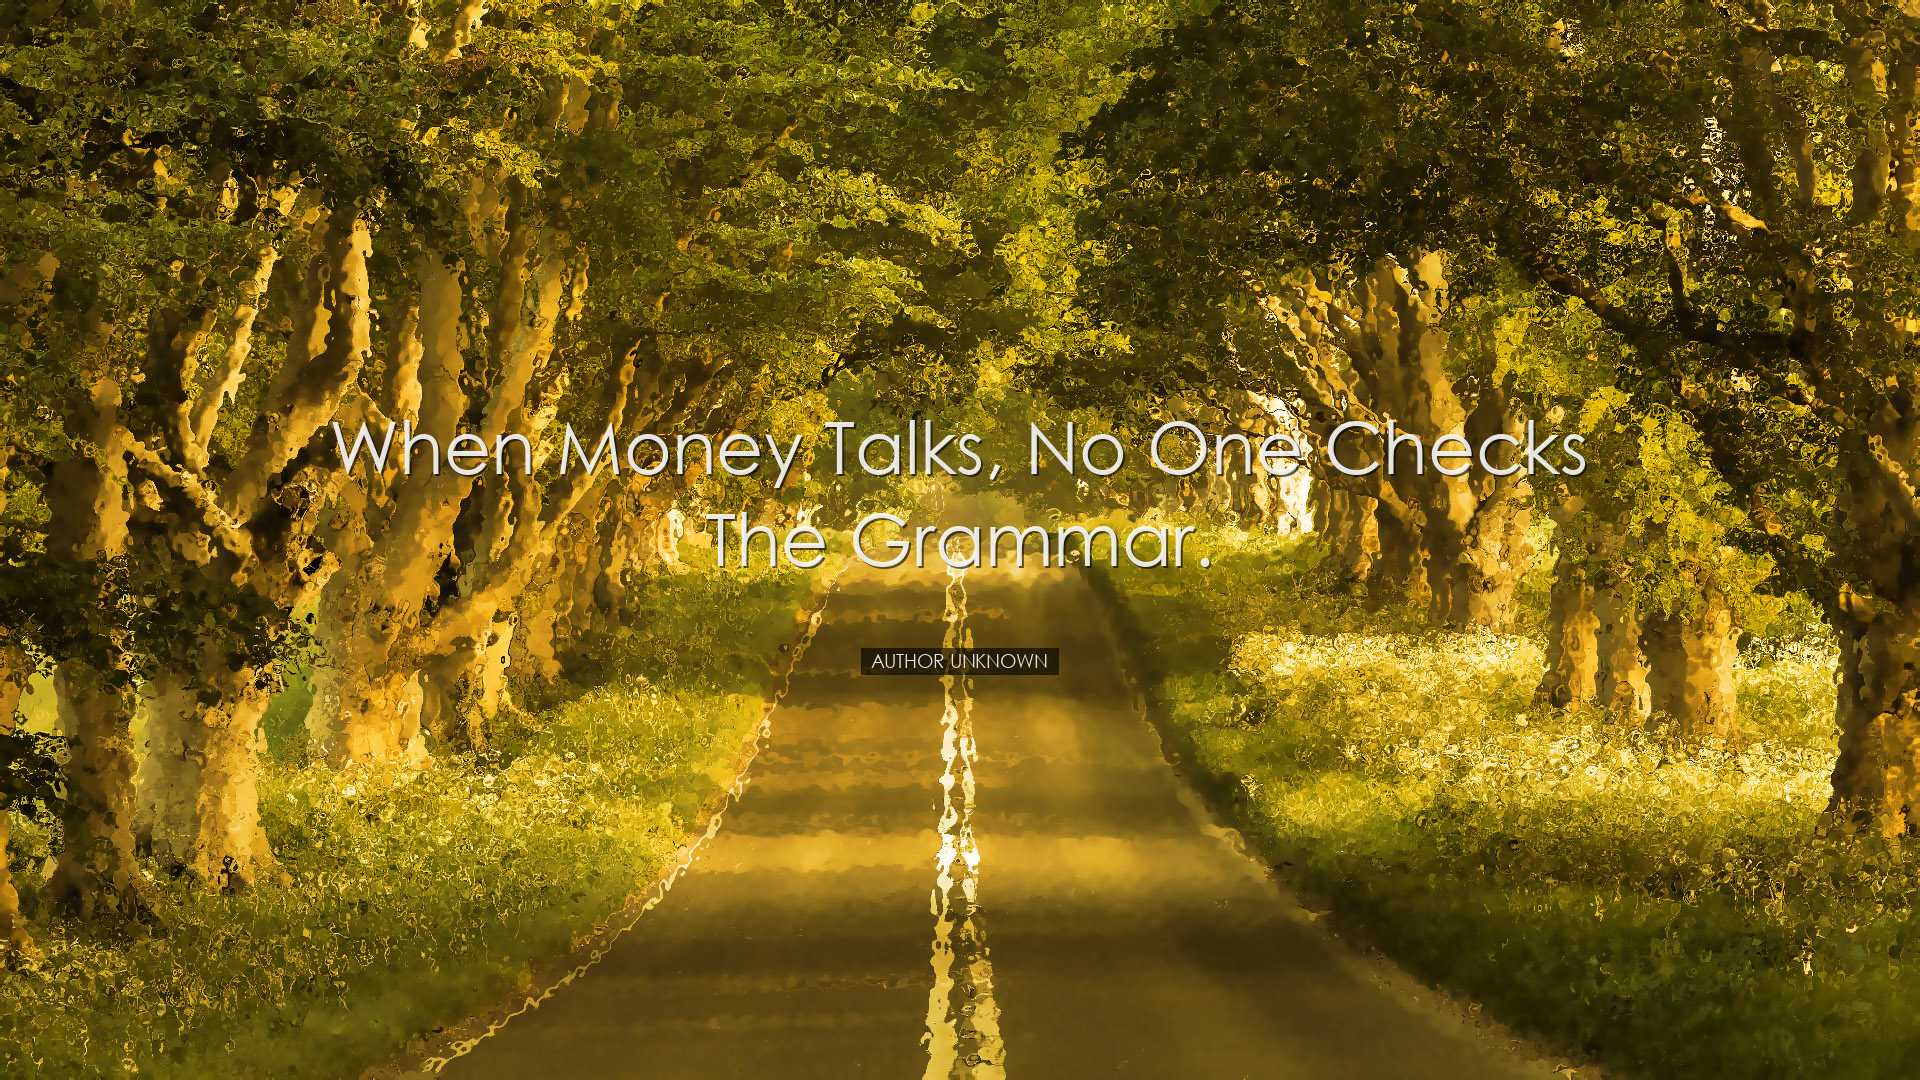 When money talks, no one checks the grammar. - Author unknown